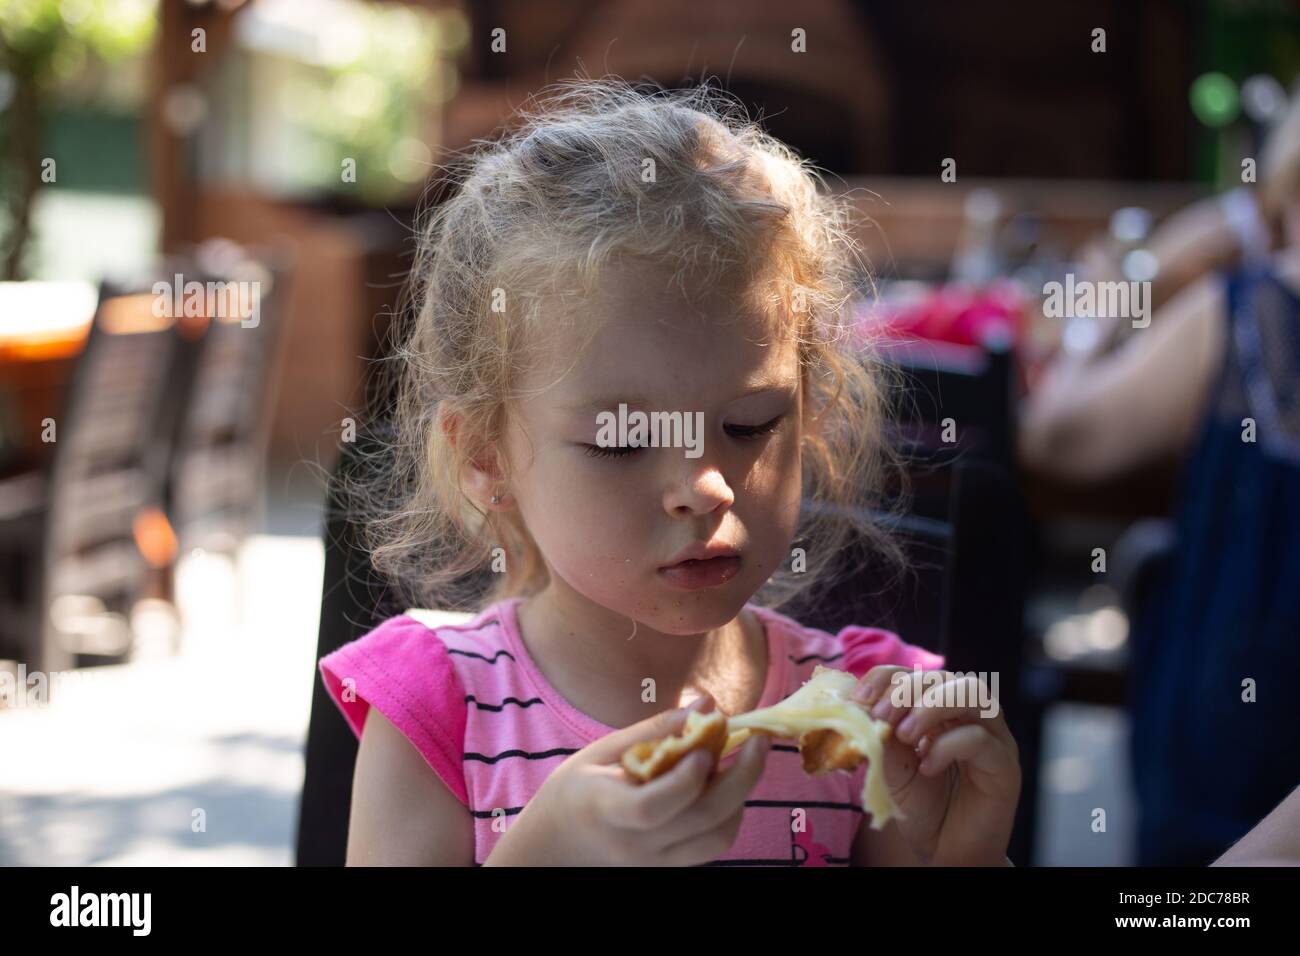 Little blonde girl eating at the restaurant Stock Photo